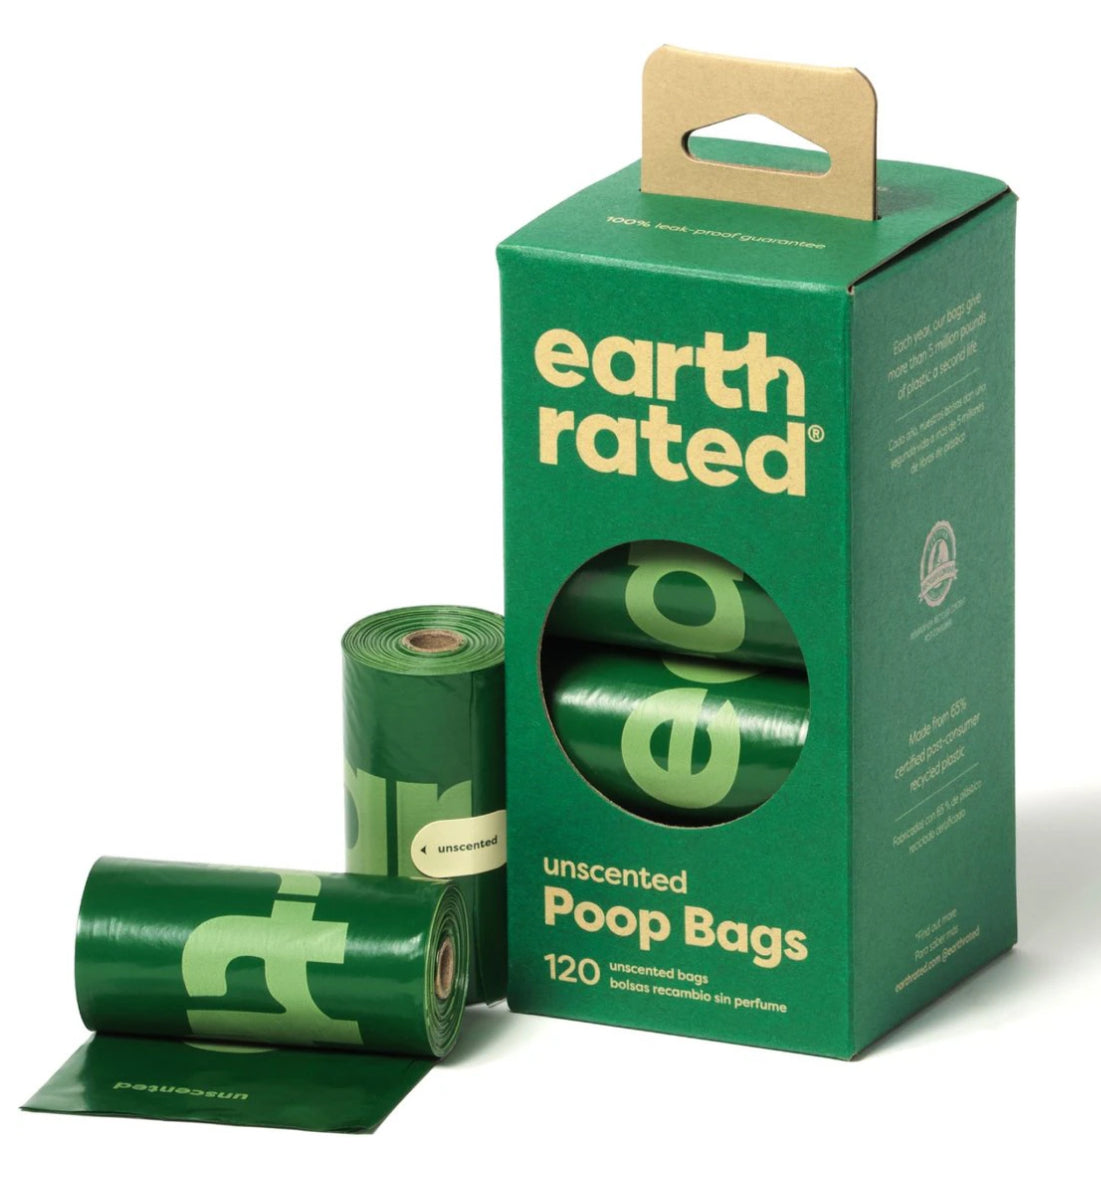 Earth Rated Poop Bags